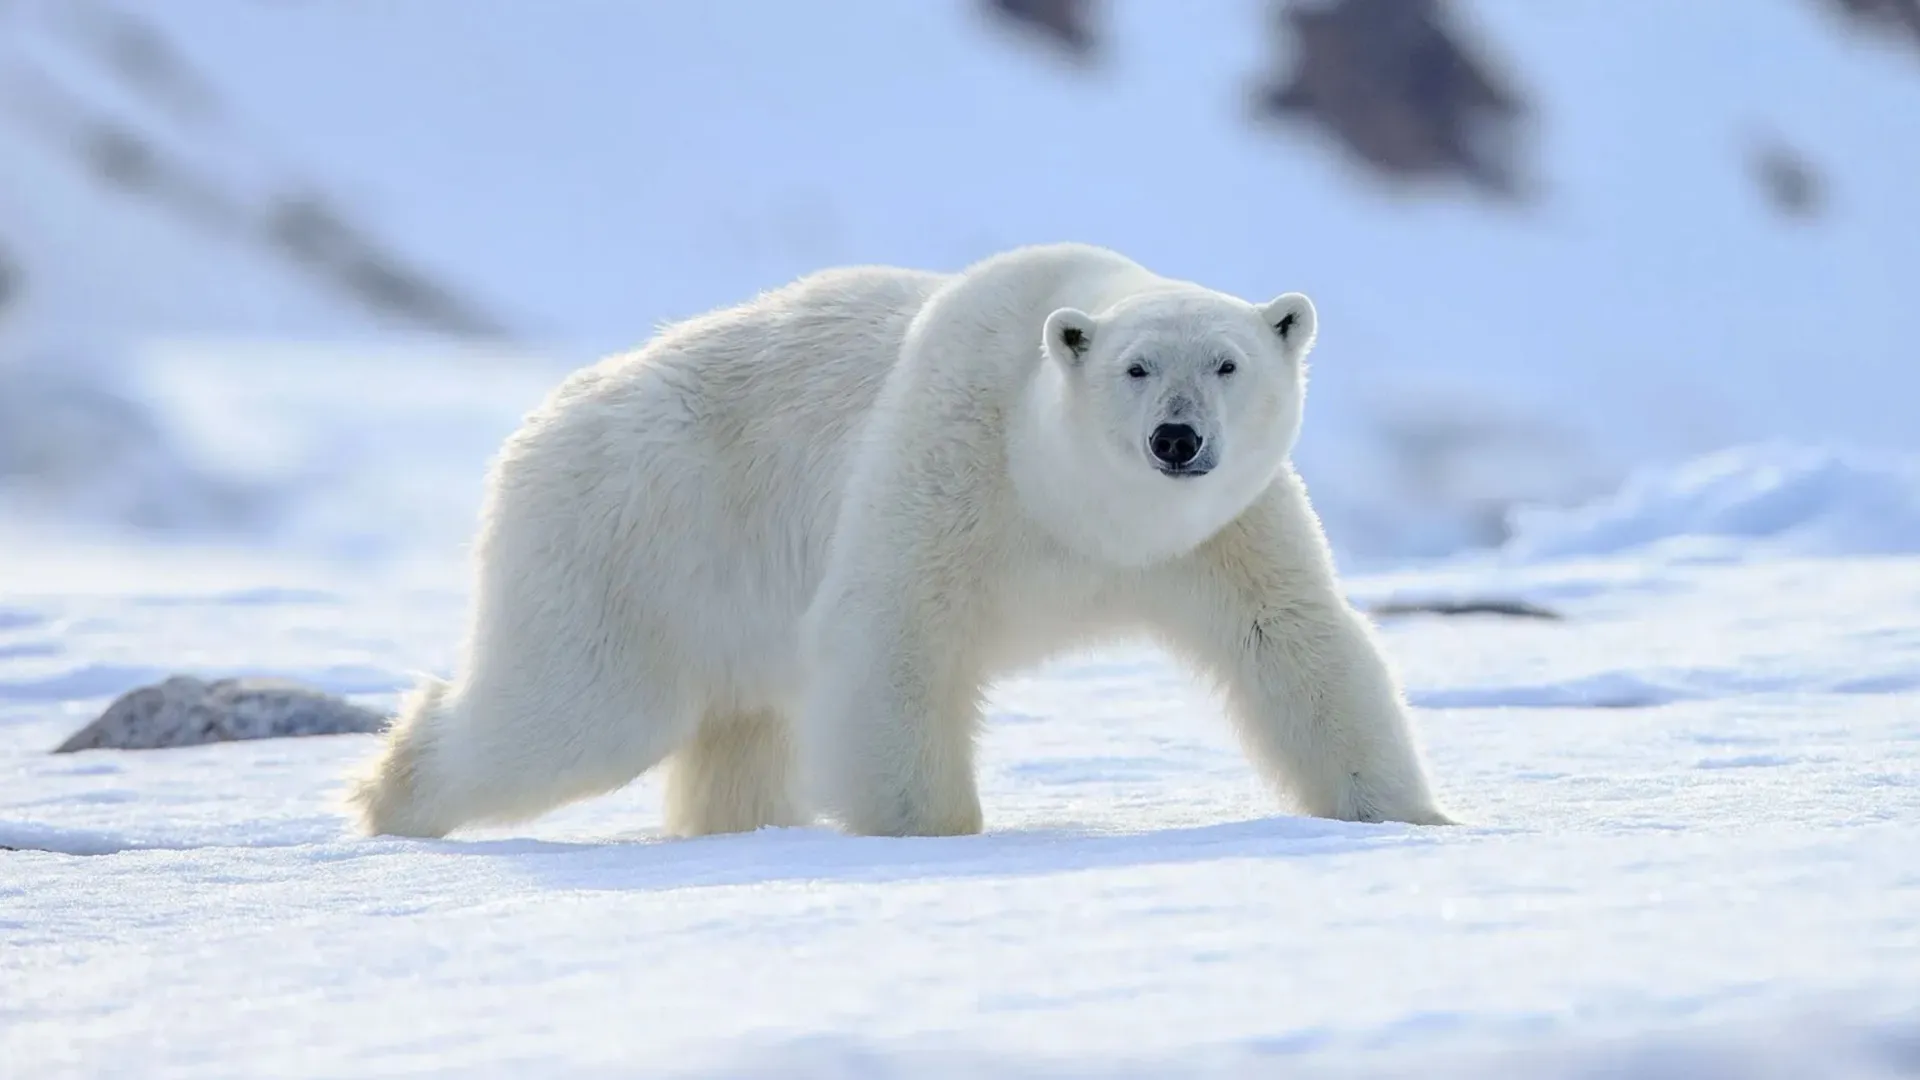 Белые медведи очень редко заходят в факторию. Фото: Vaclav Sebek / Shutterstock.com / Fotodom